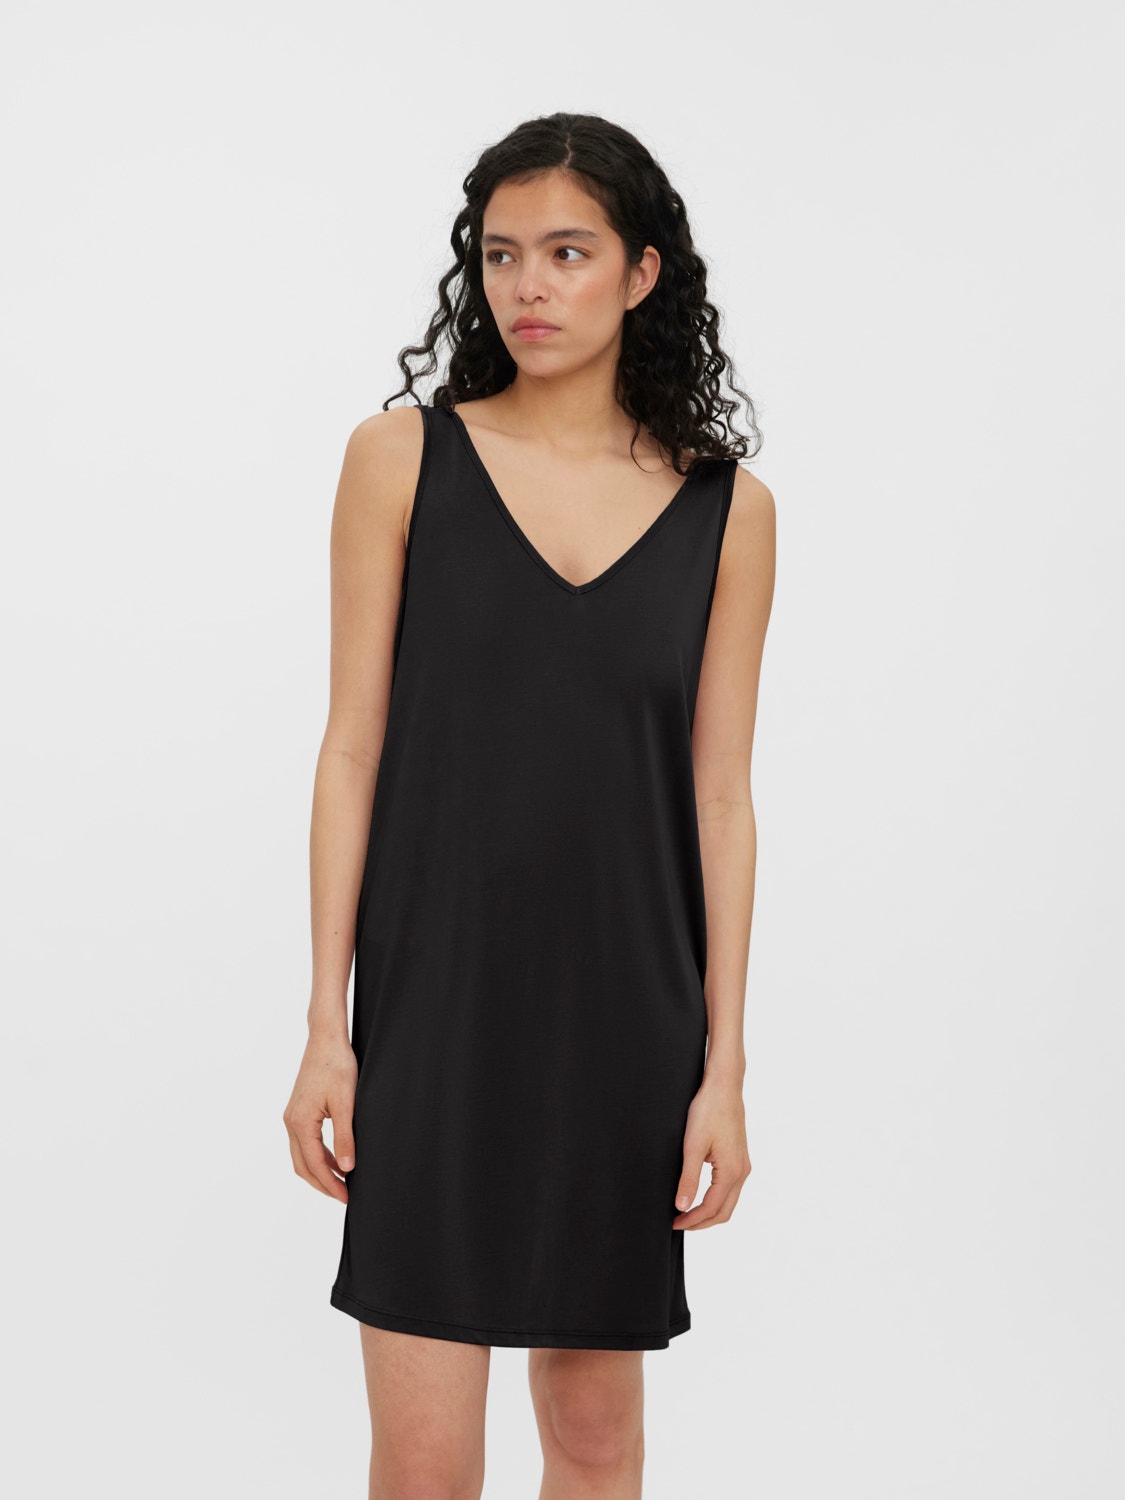 Integratie Moreel Bijlage Lange jurk | Zwart | Vero Moda®